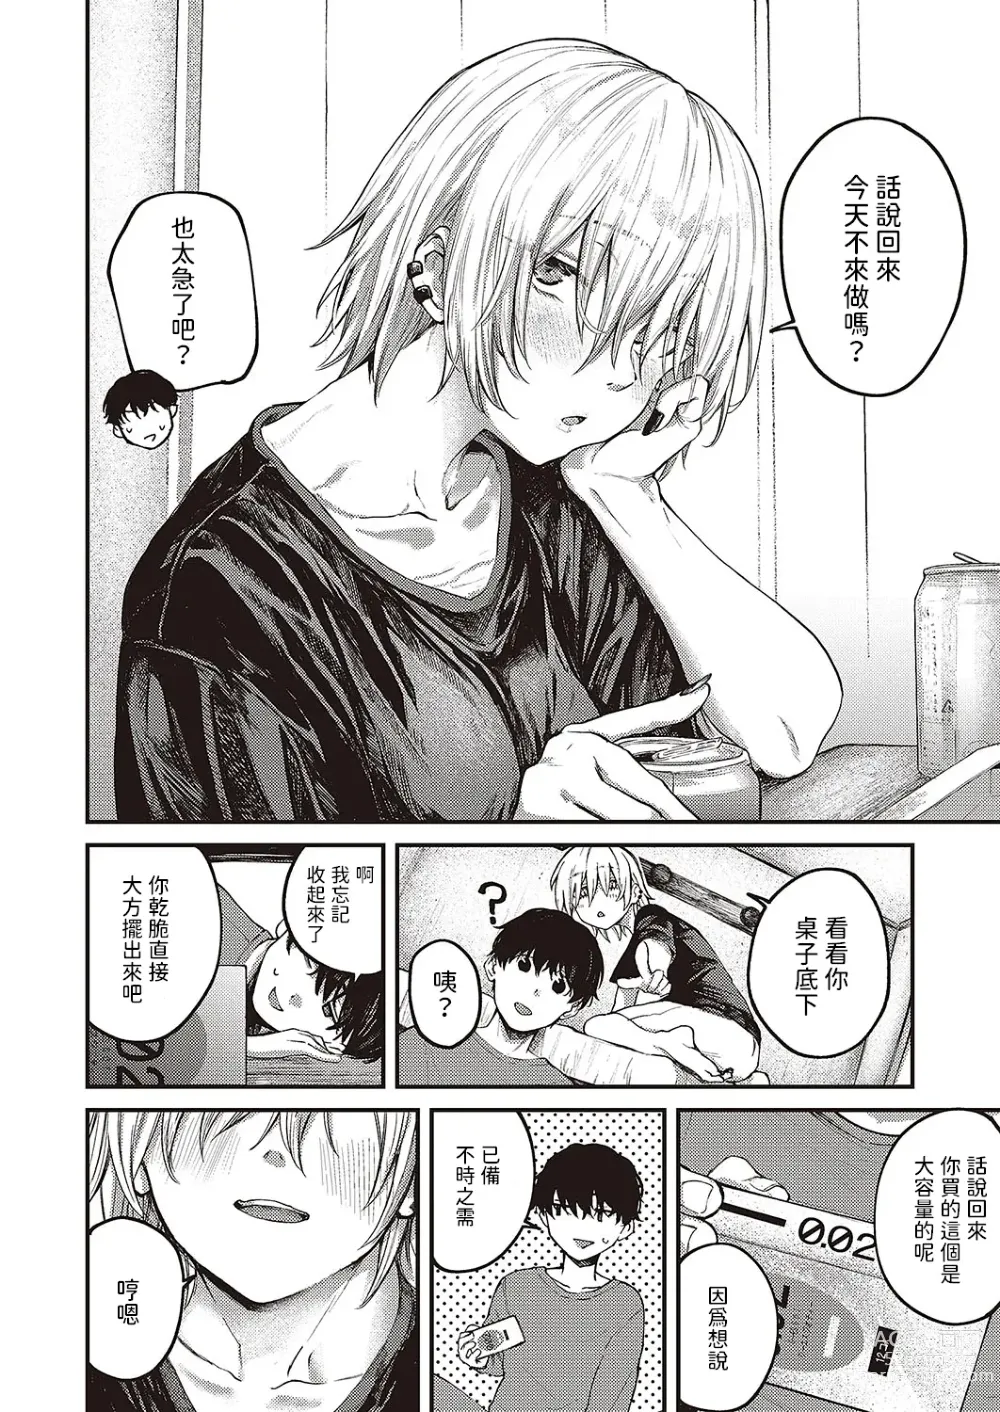 Page 8 of manga Tooriame